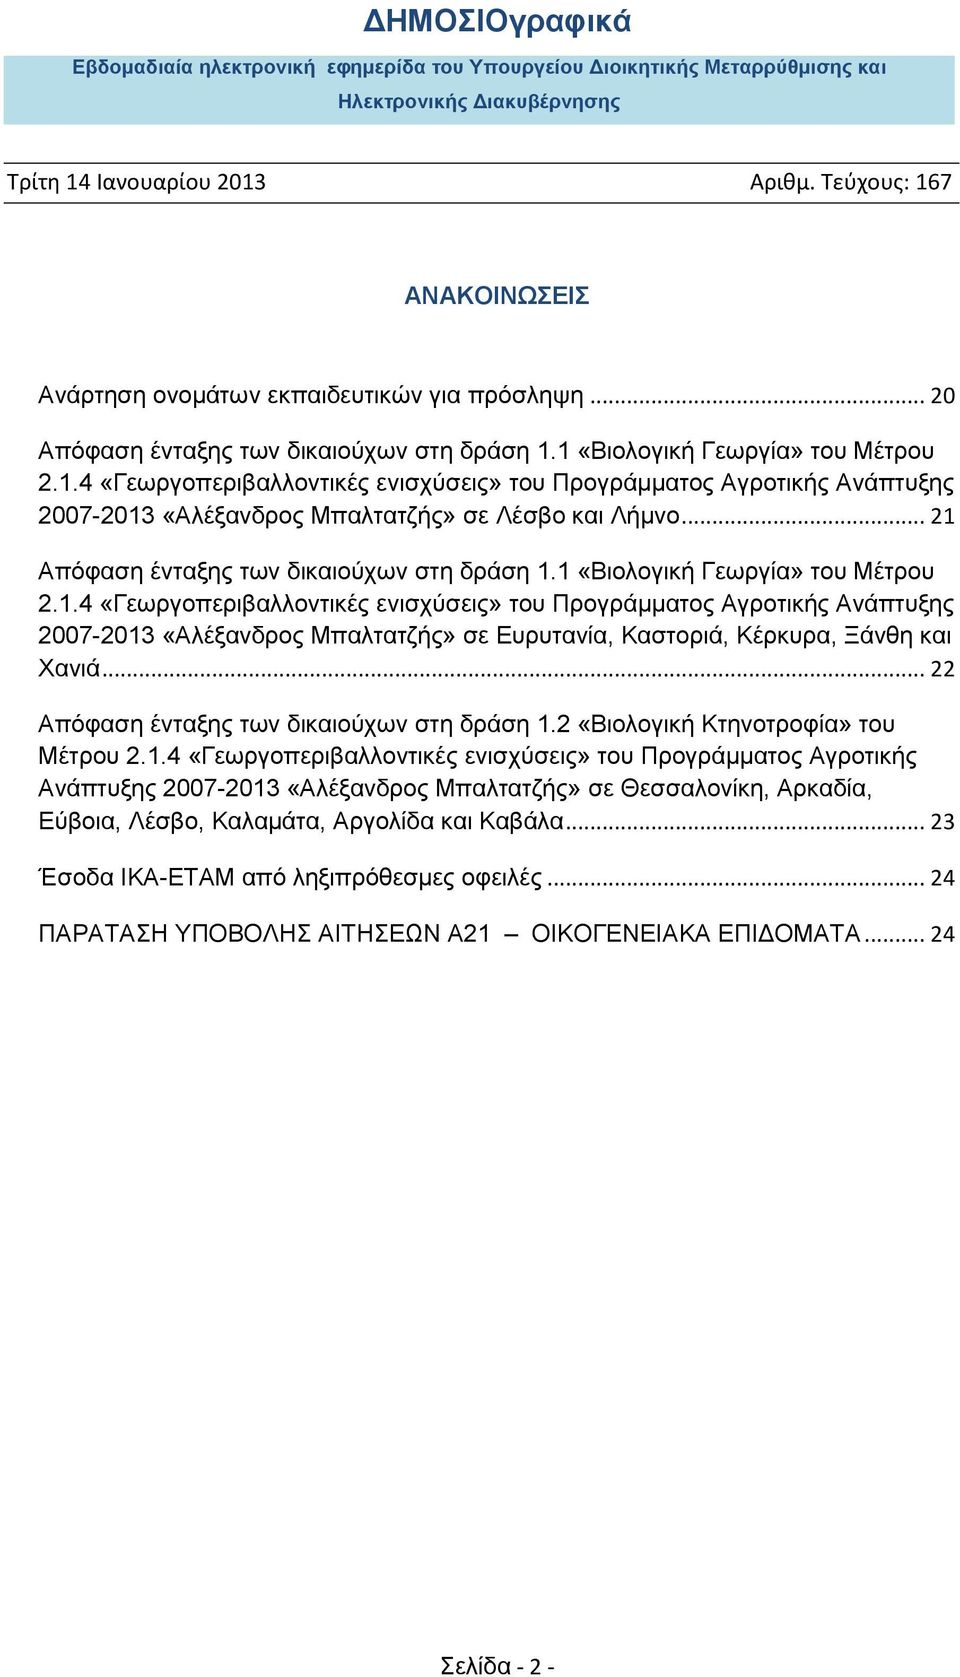 .. 21 Απόφαση ένταξης των δικαιούχων στη δράση 1.1 «Βιολογική Γεωργία» του Μέτρου 2.1.4 «Γεωργοπεριβαλλοντικές ενισχύσεις» του Προγράμματος Αγροτικής Ανάπτυξης 2007-2013 «Αλέξανδρος Μπαλτατζής» σε Ευρυτανία, Καστοριά, Κέρκυρα, Ξάνθη και Χανιά.